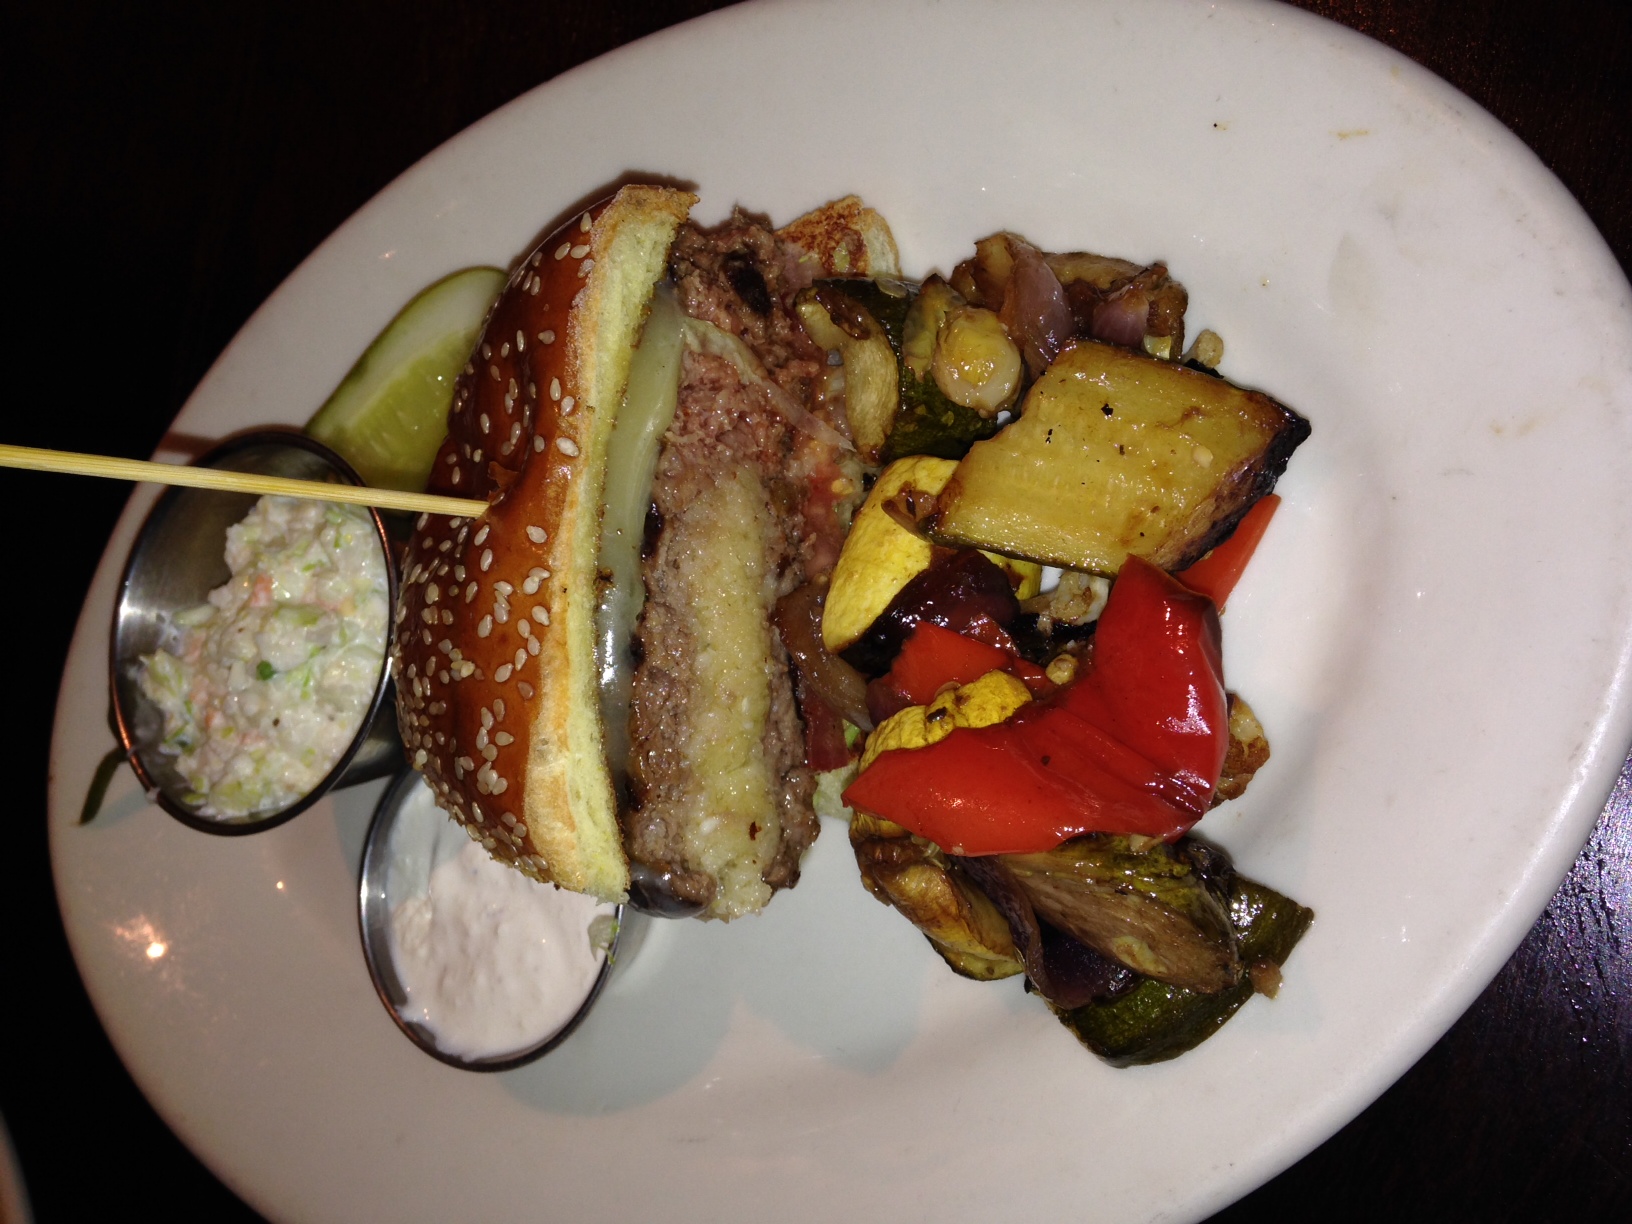 Wildfire - Oakbrook, IL - Horse Radish Stuffed Burger - Dec 2013